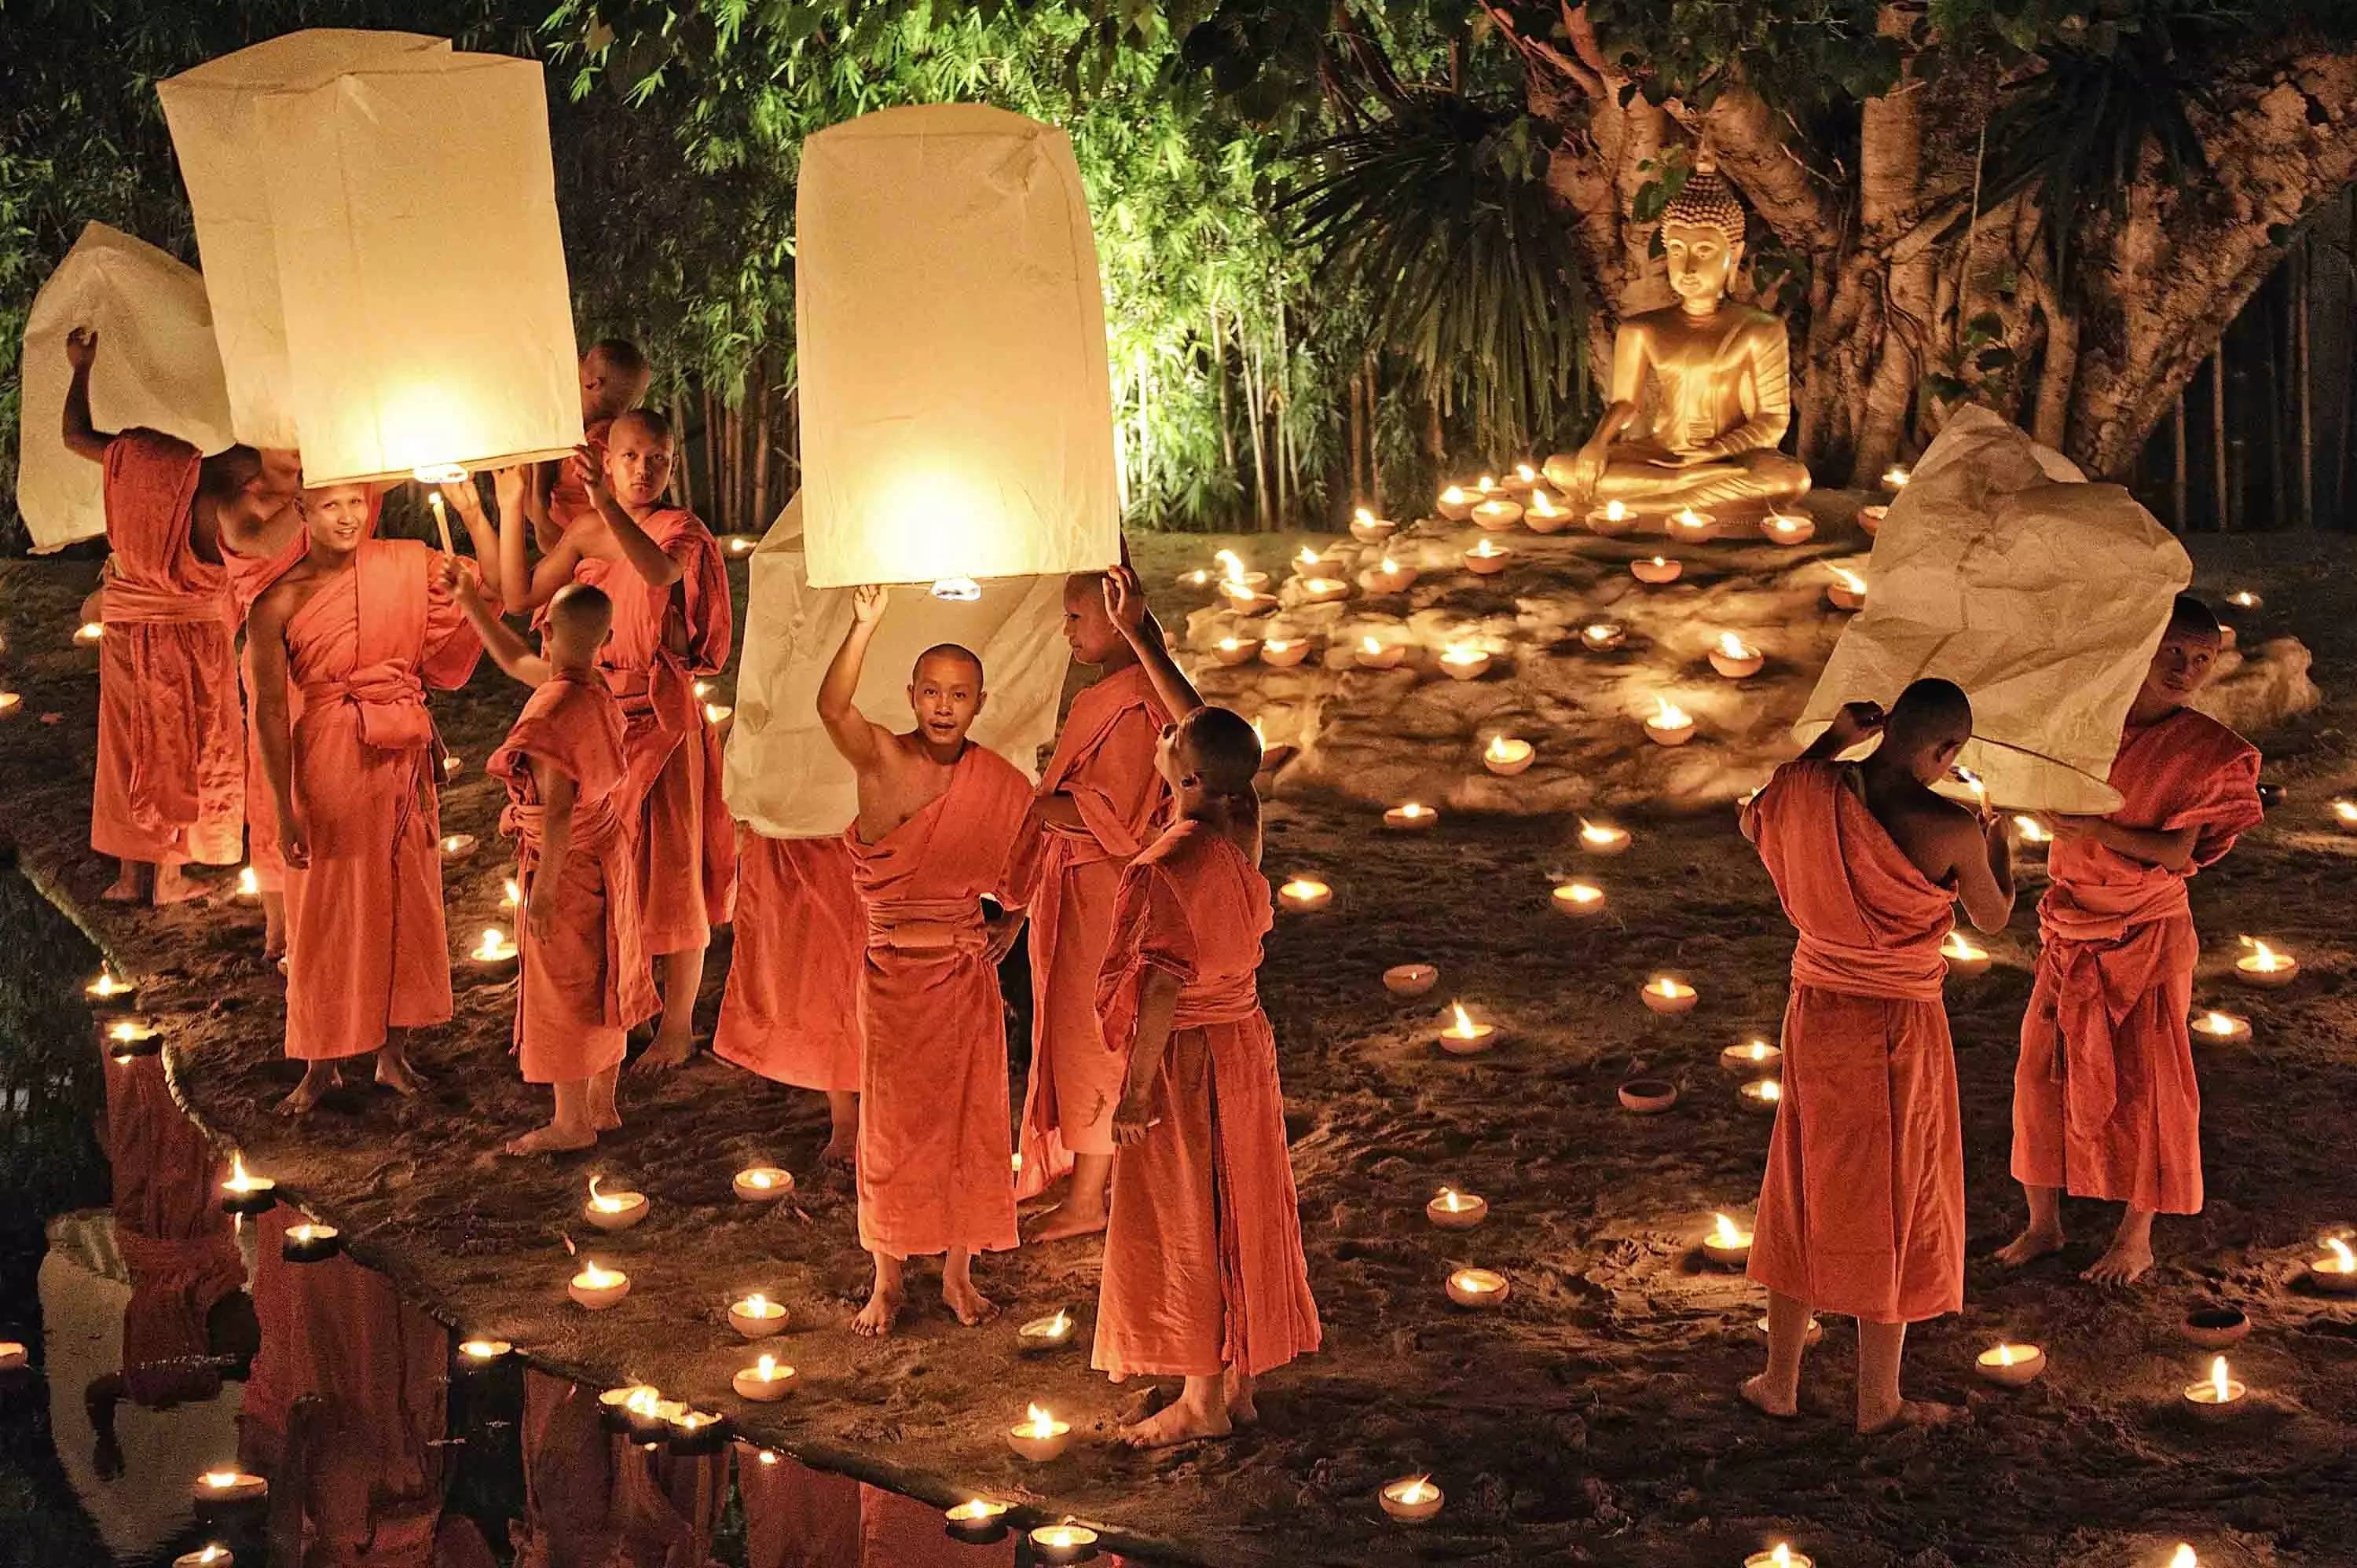 泰国清迈天灯节，泰国七大奇景”之一。有机会要去看一次